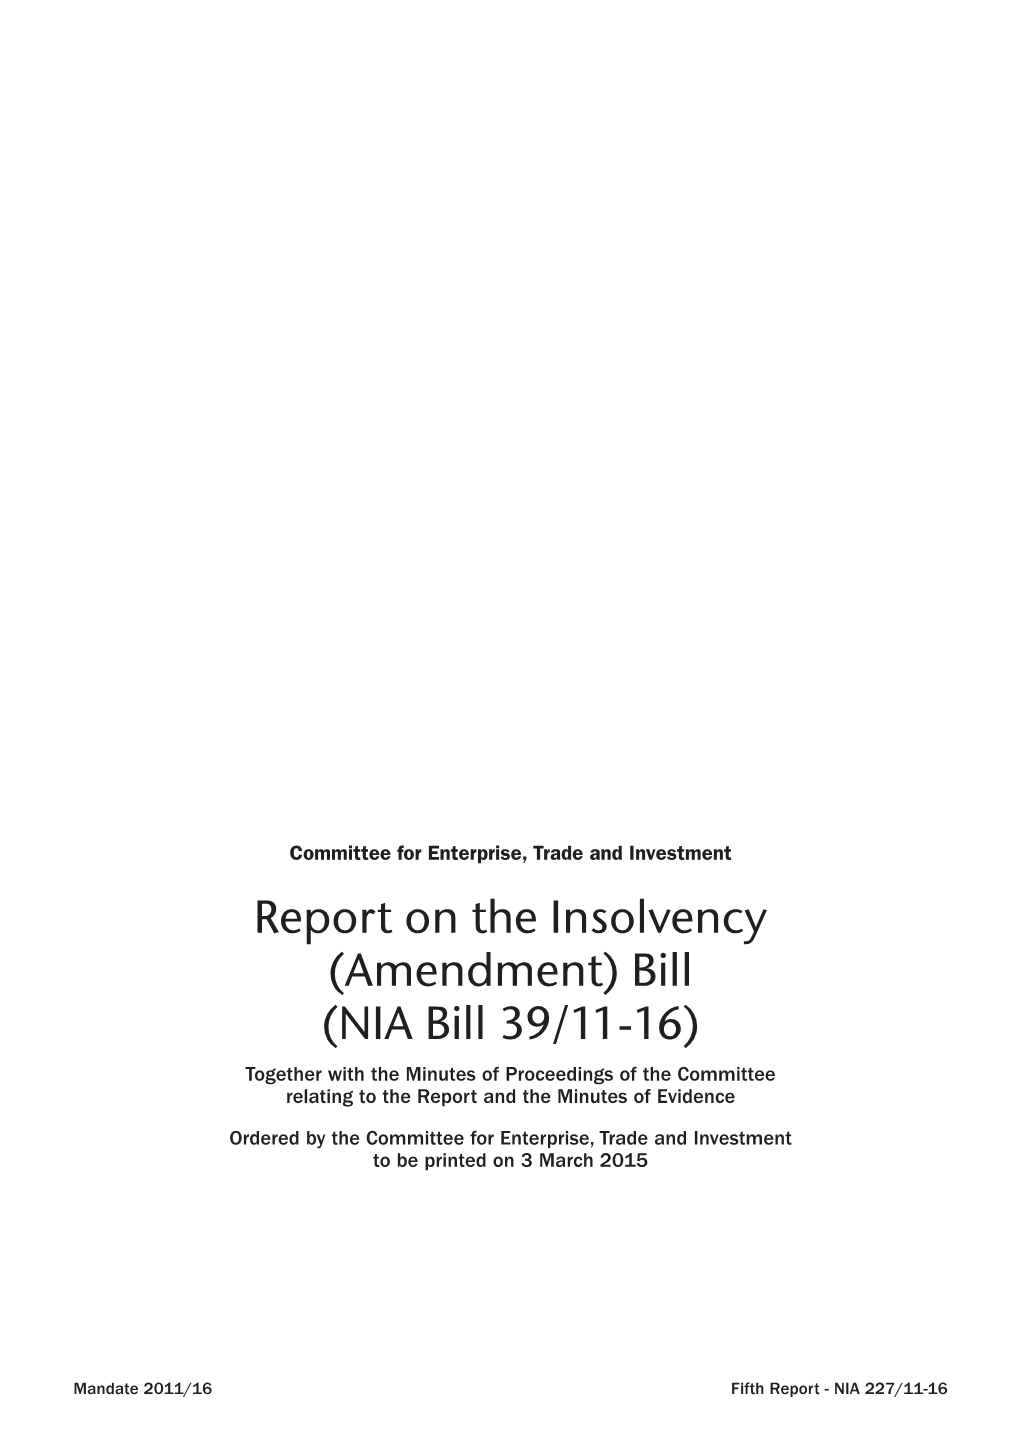 Report on the Insolvency (Amendment) Bill (NIA Bill 39/11-16)